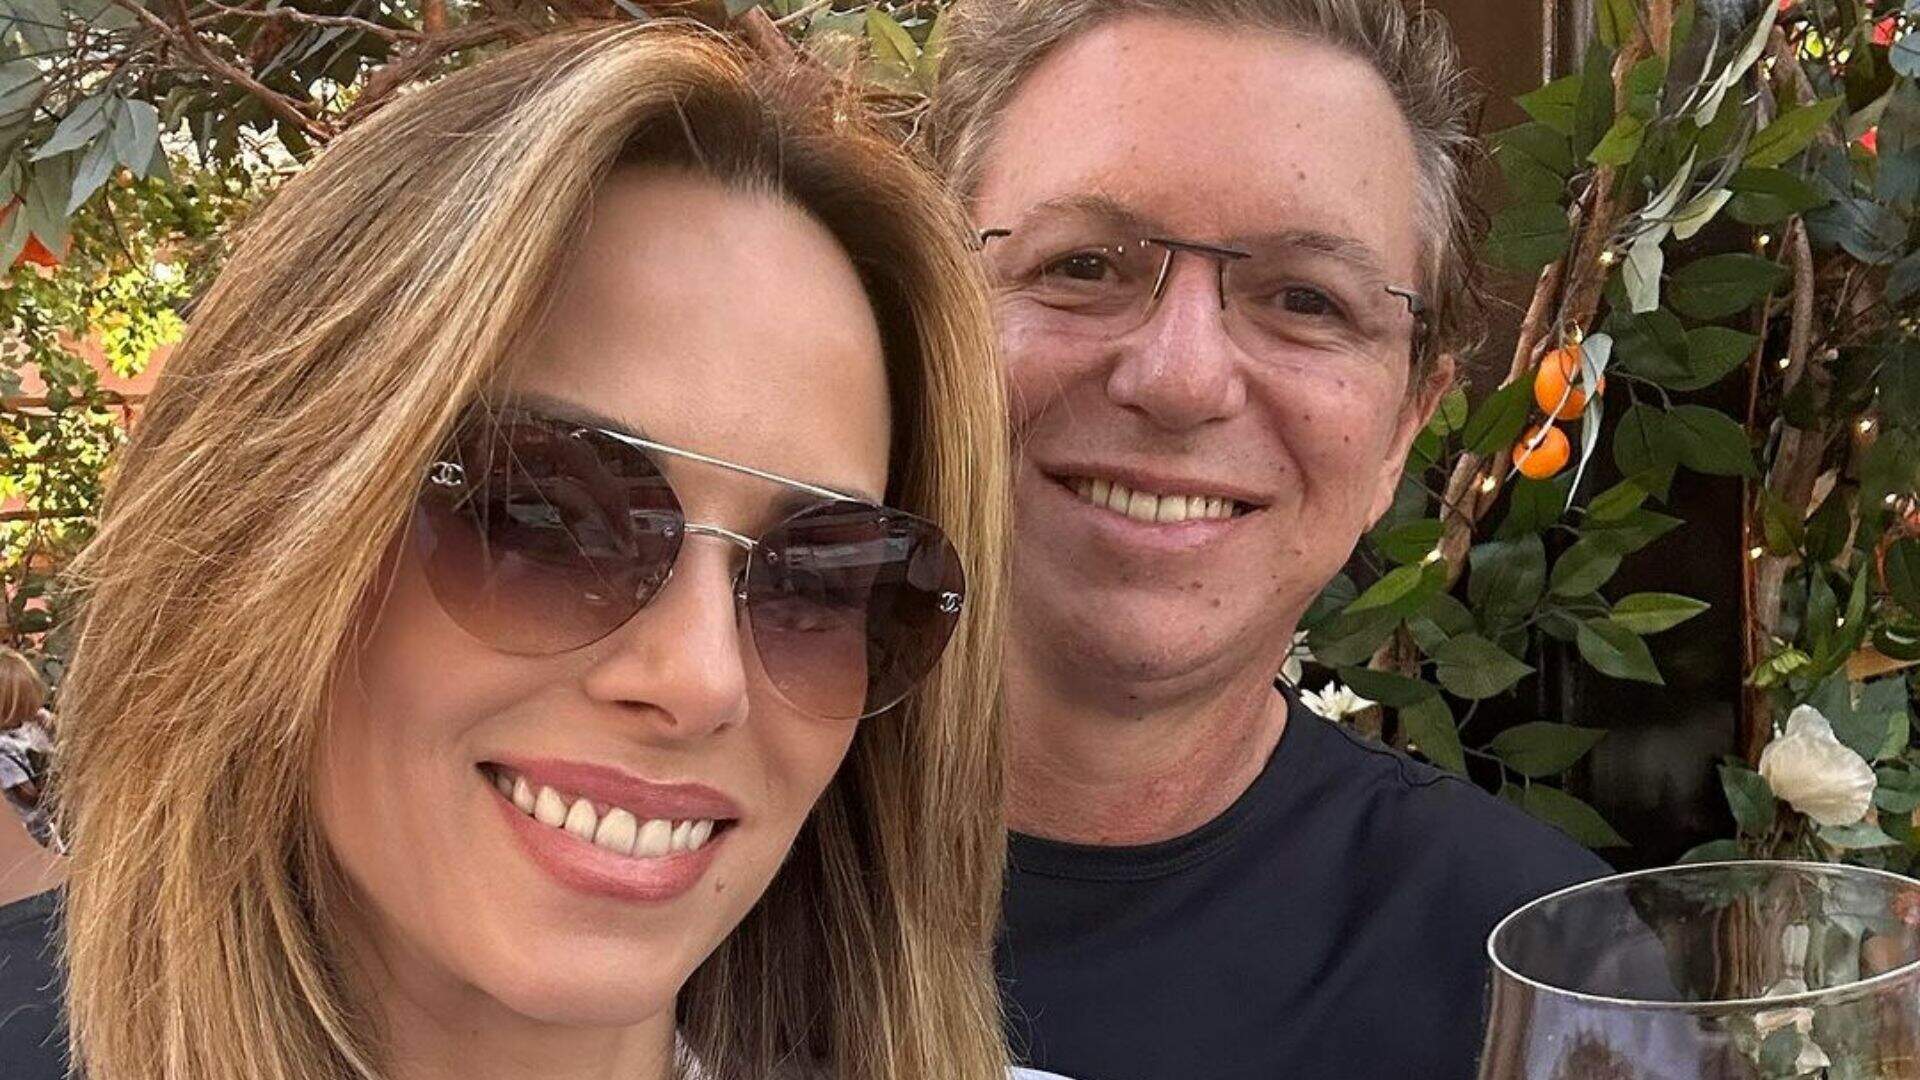 Reação de Boninho com o fim de tratamento de câncer de Ana Furtado viraliza; veja vídeo - Metropolitana FM